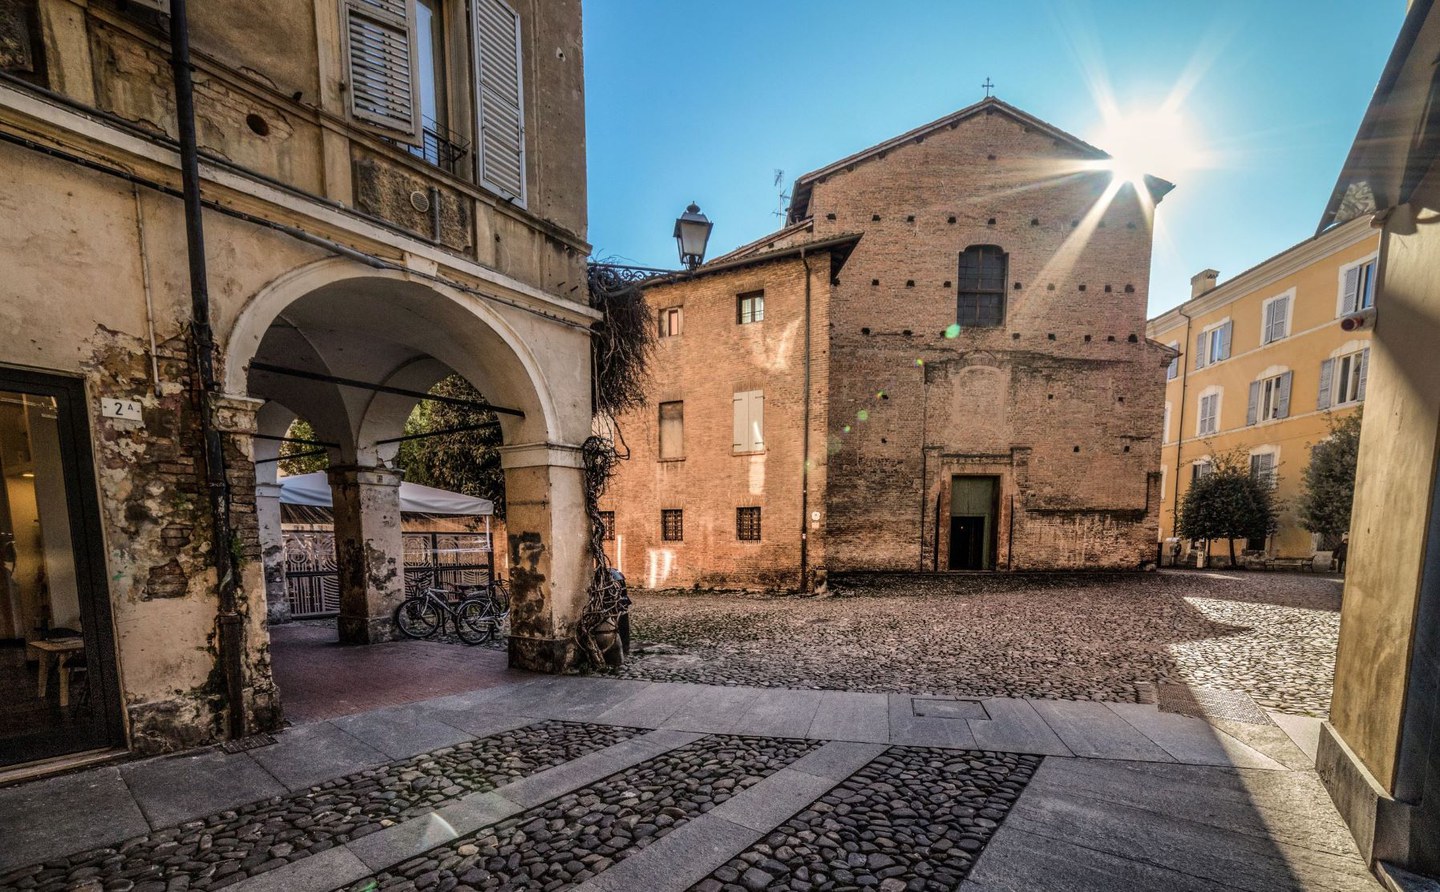 Passeggiando tra le più belle piazze di Modena